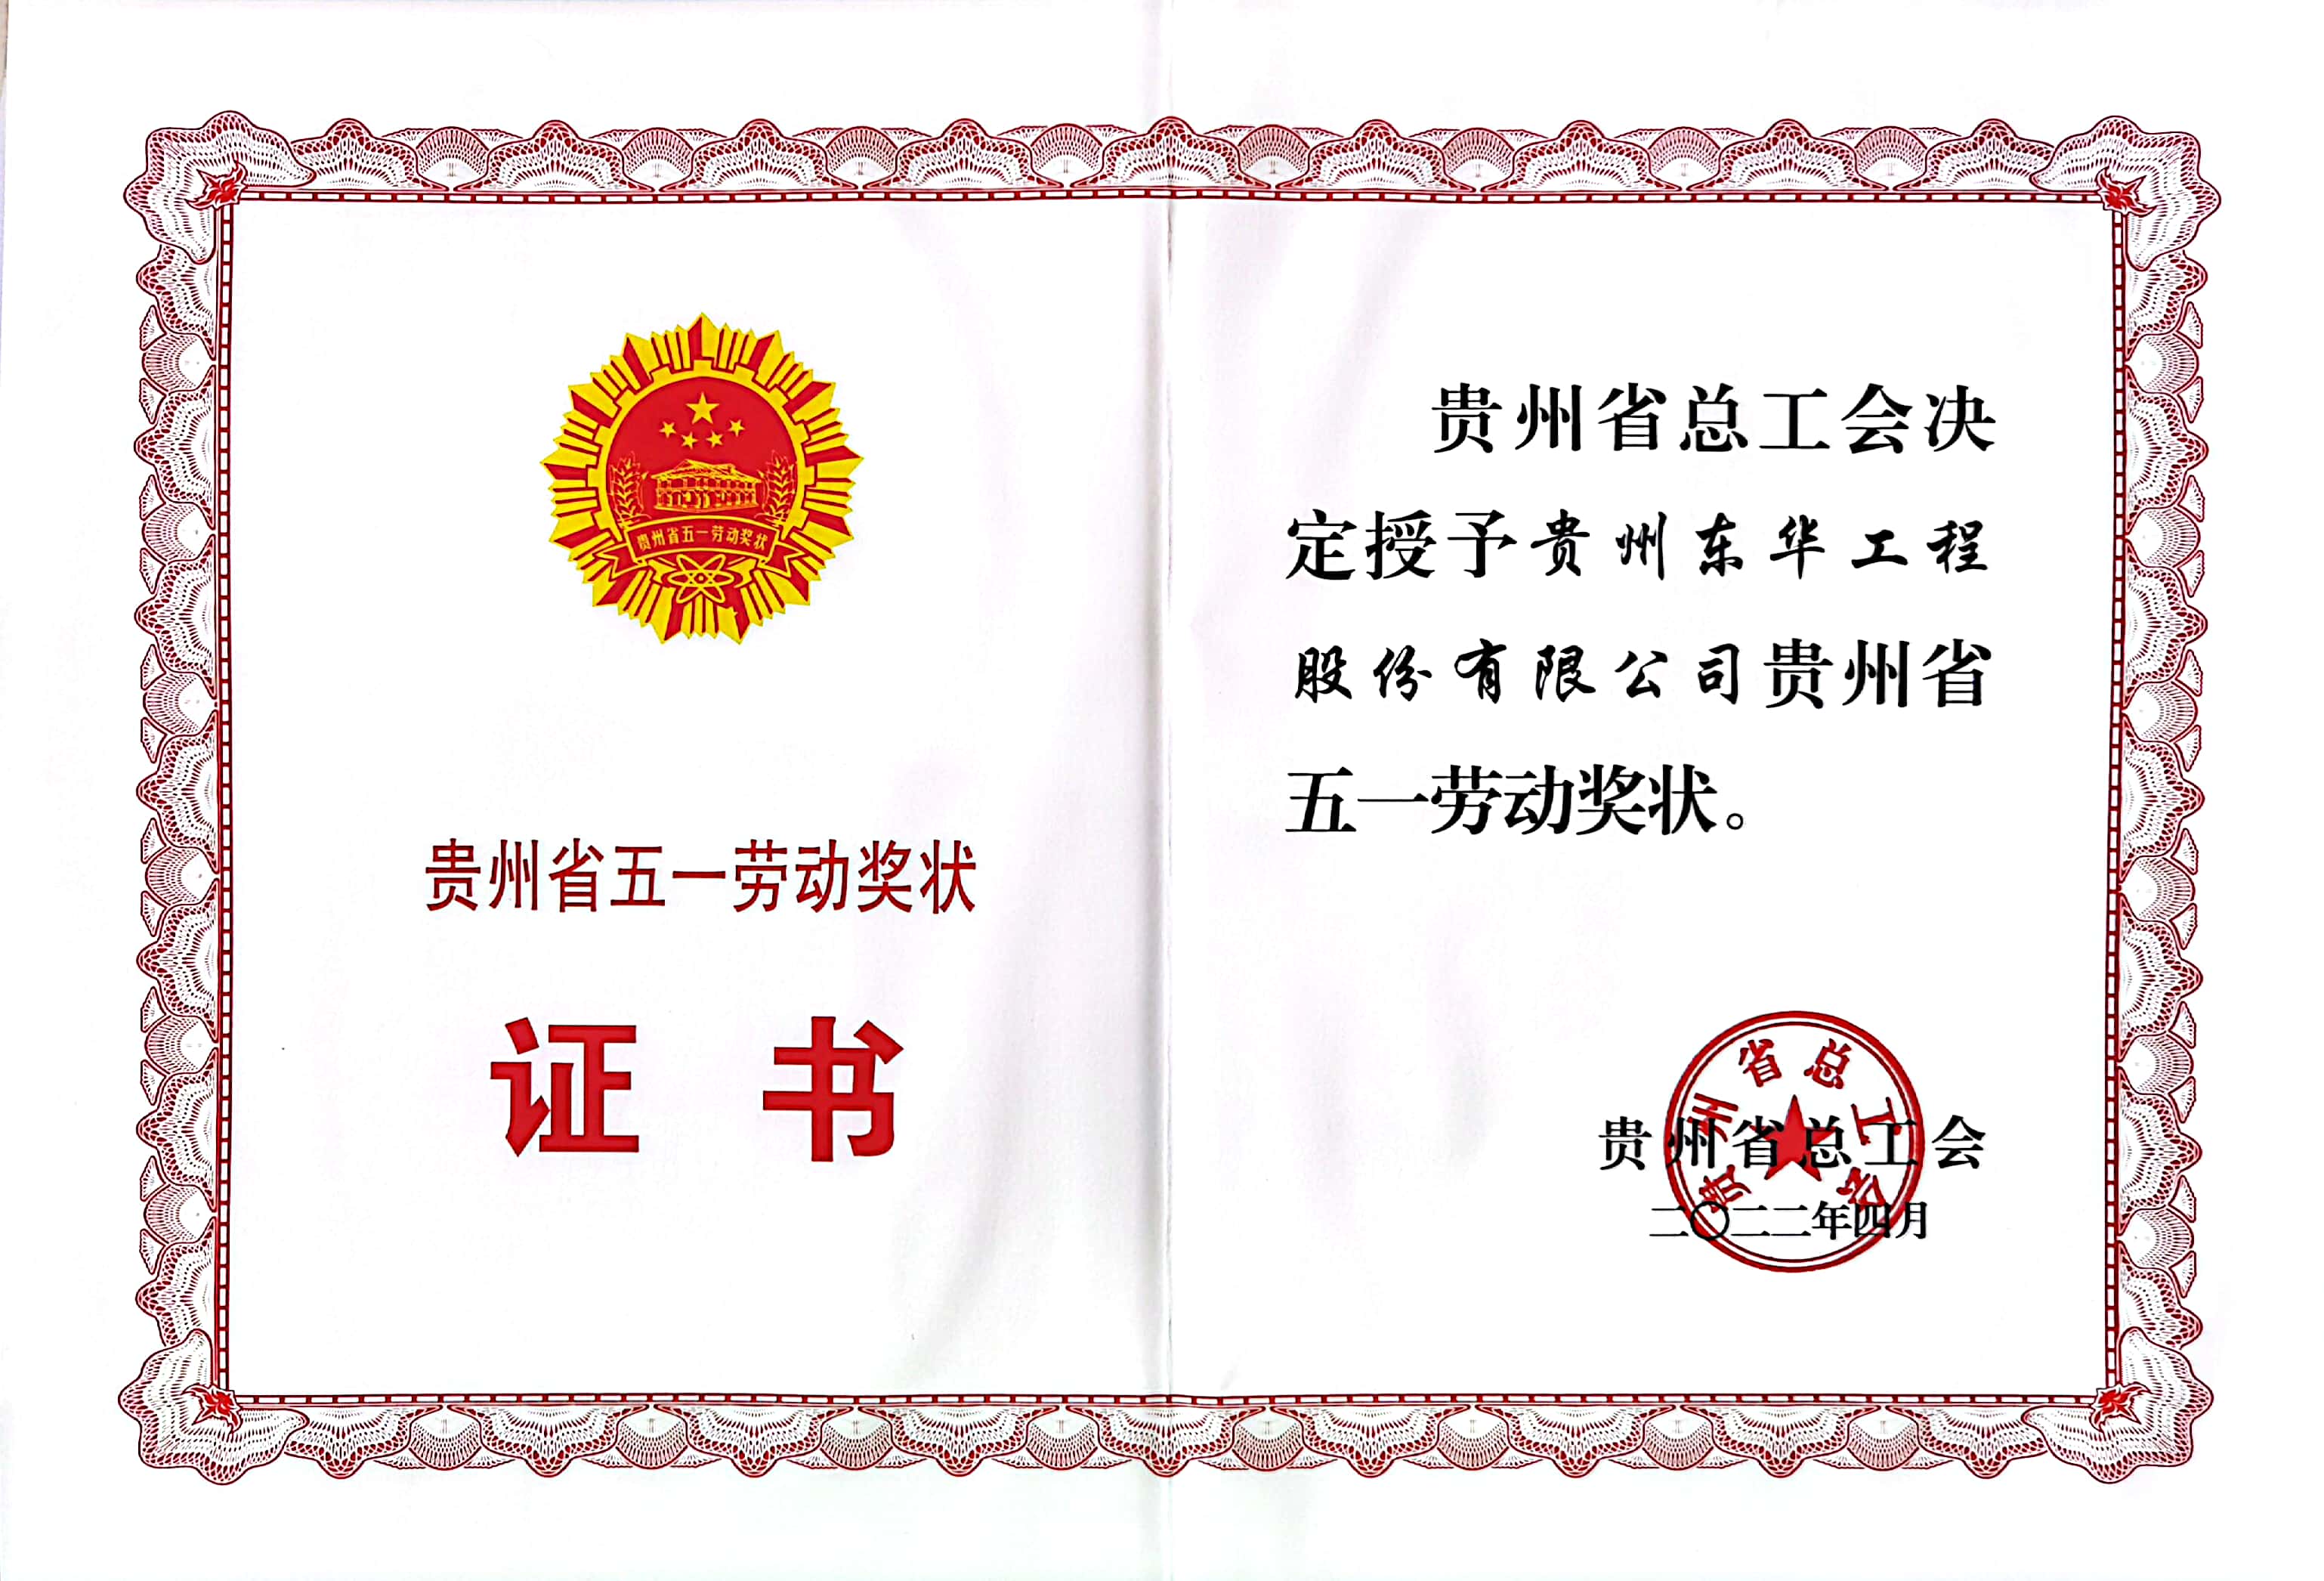 喜讯!  贵州东华荣获“贵州省五一劳动奖状”荣誉称号